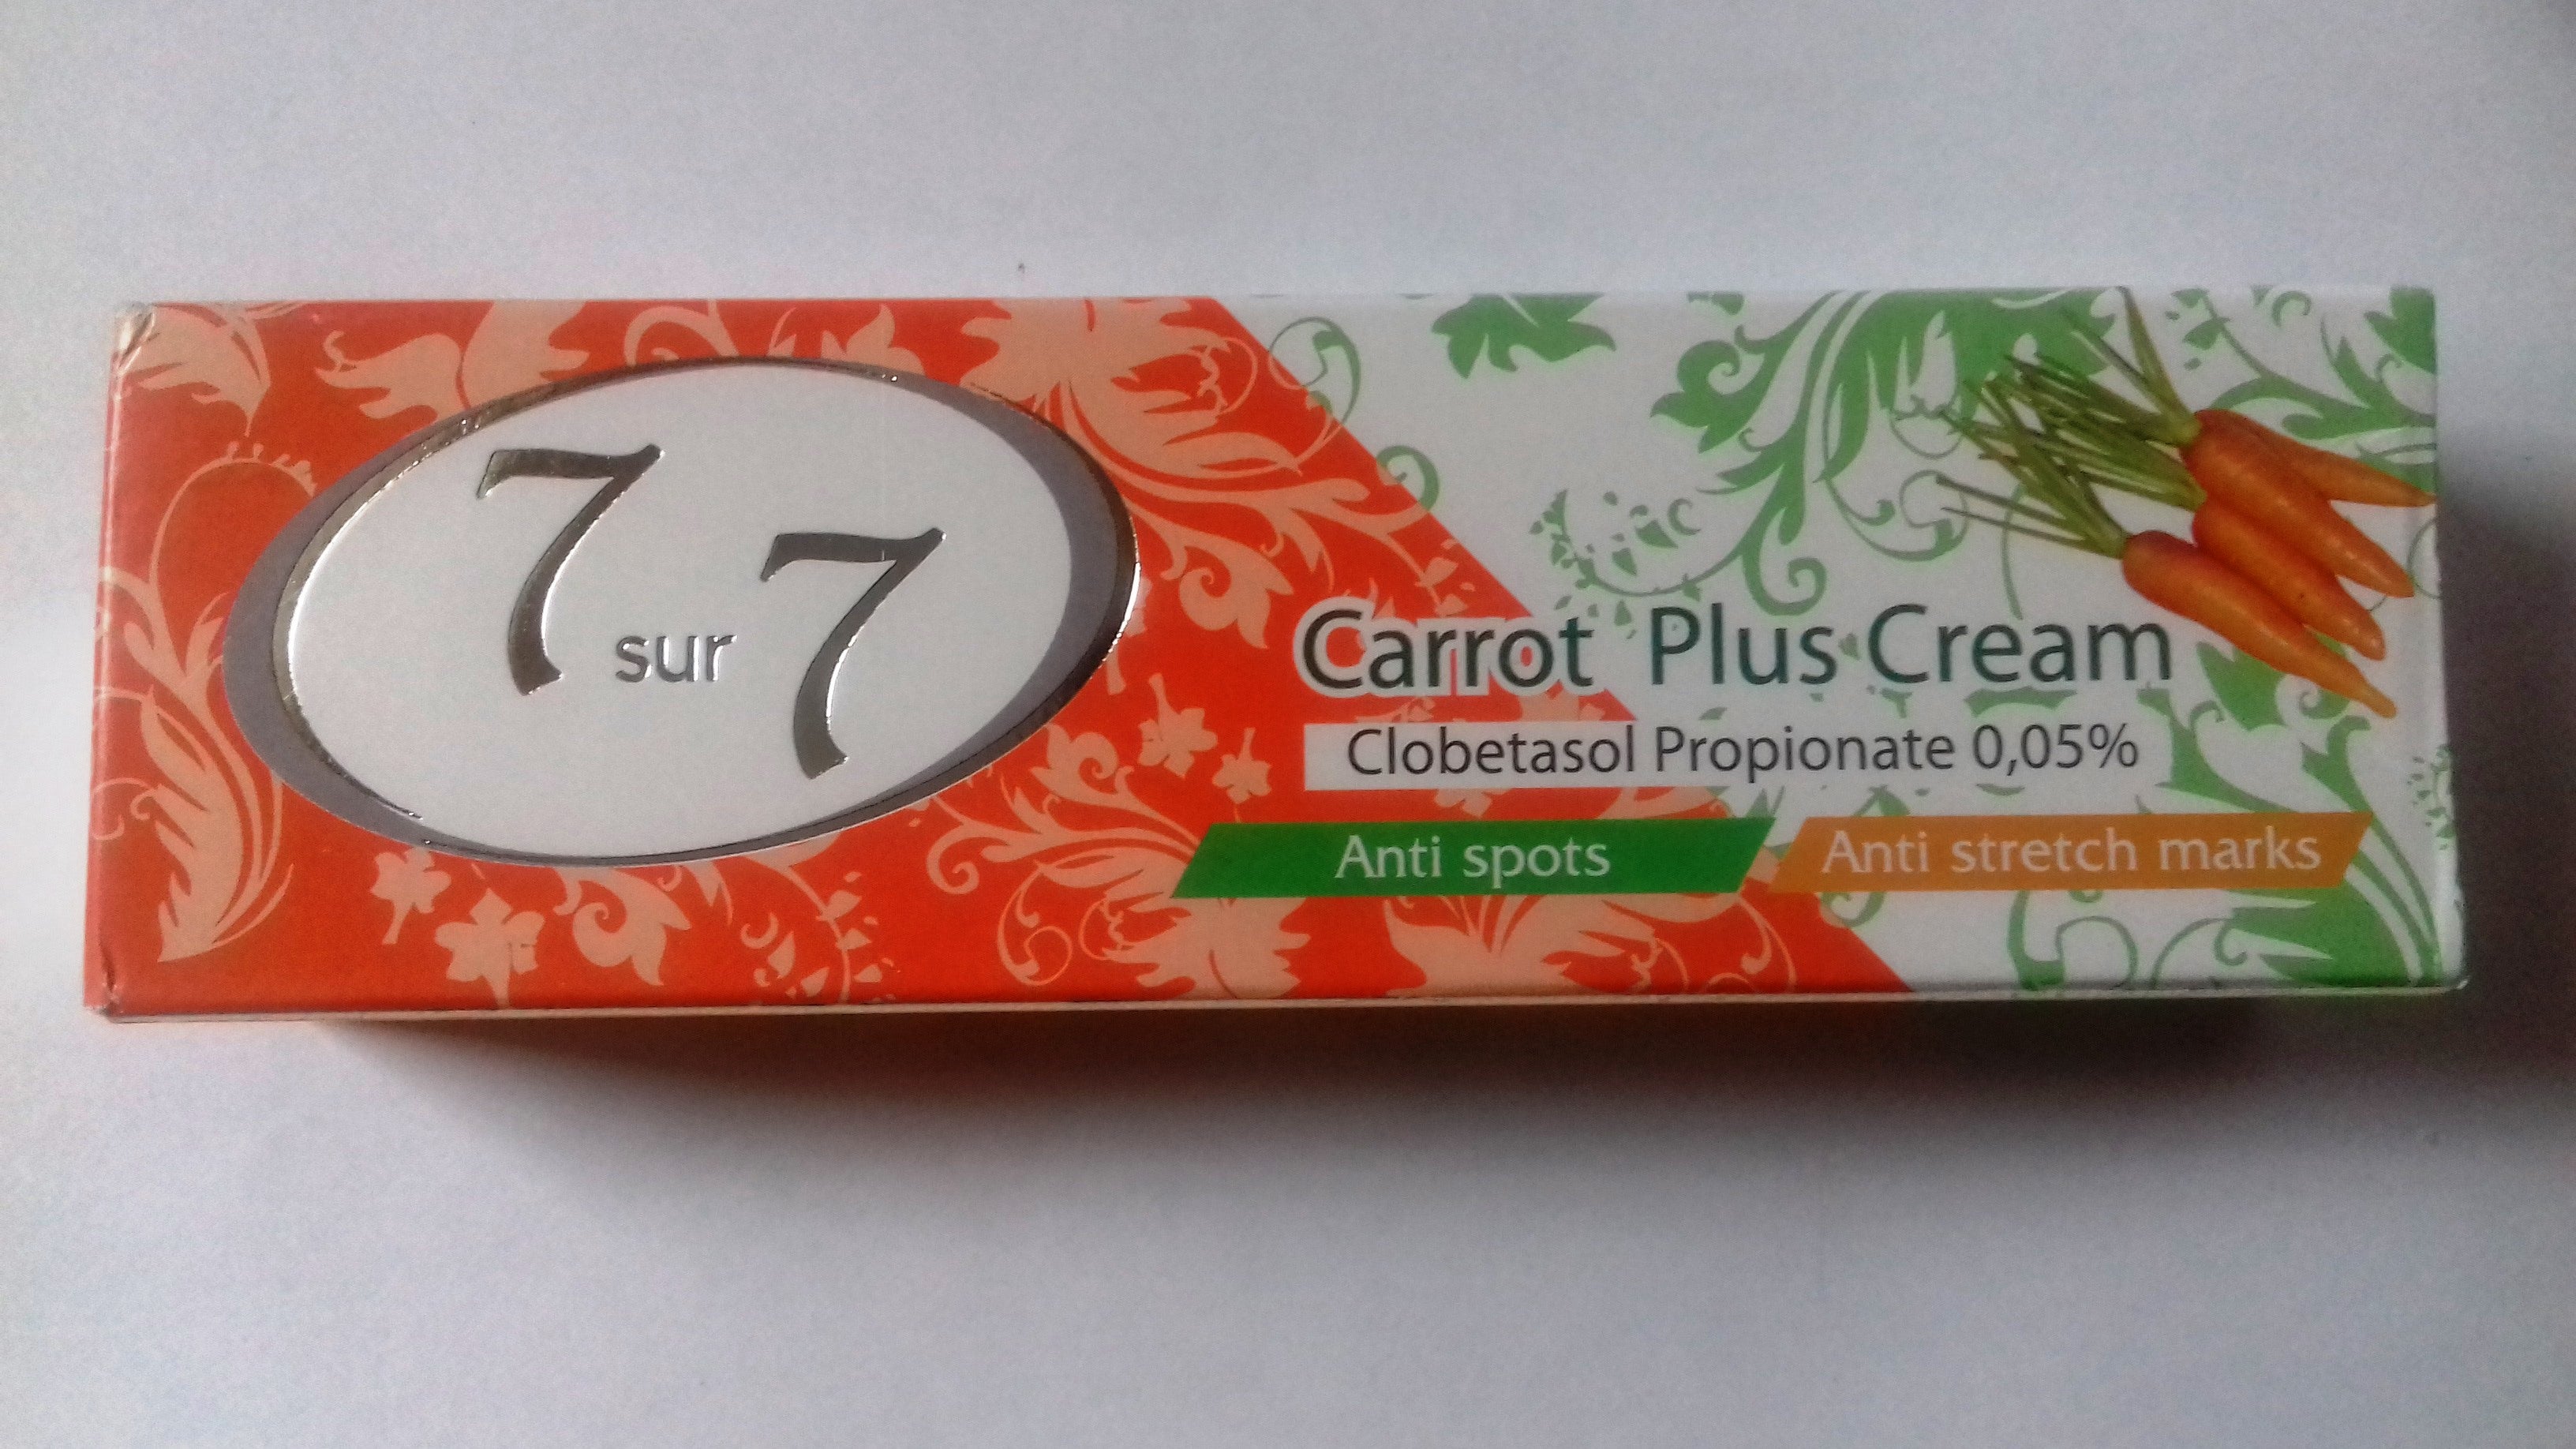 7 Sur 7 Carrot Plus Cream Clobetasol Propionate 0.05% 50gm